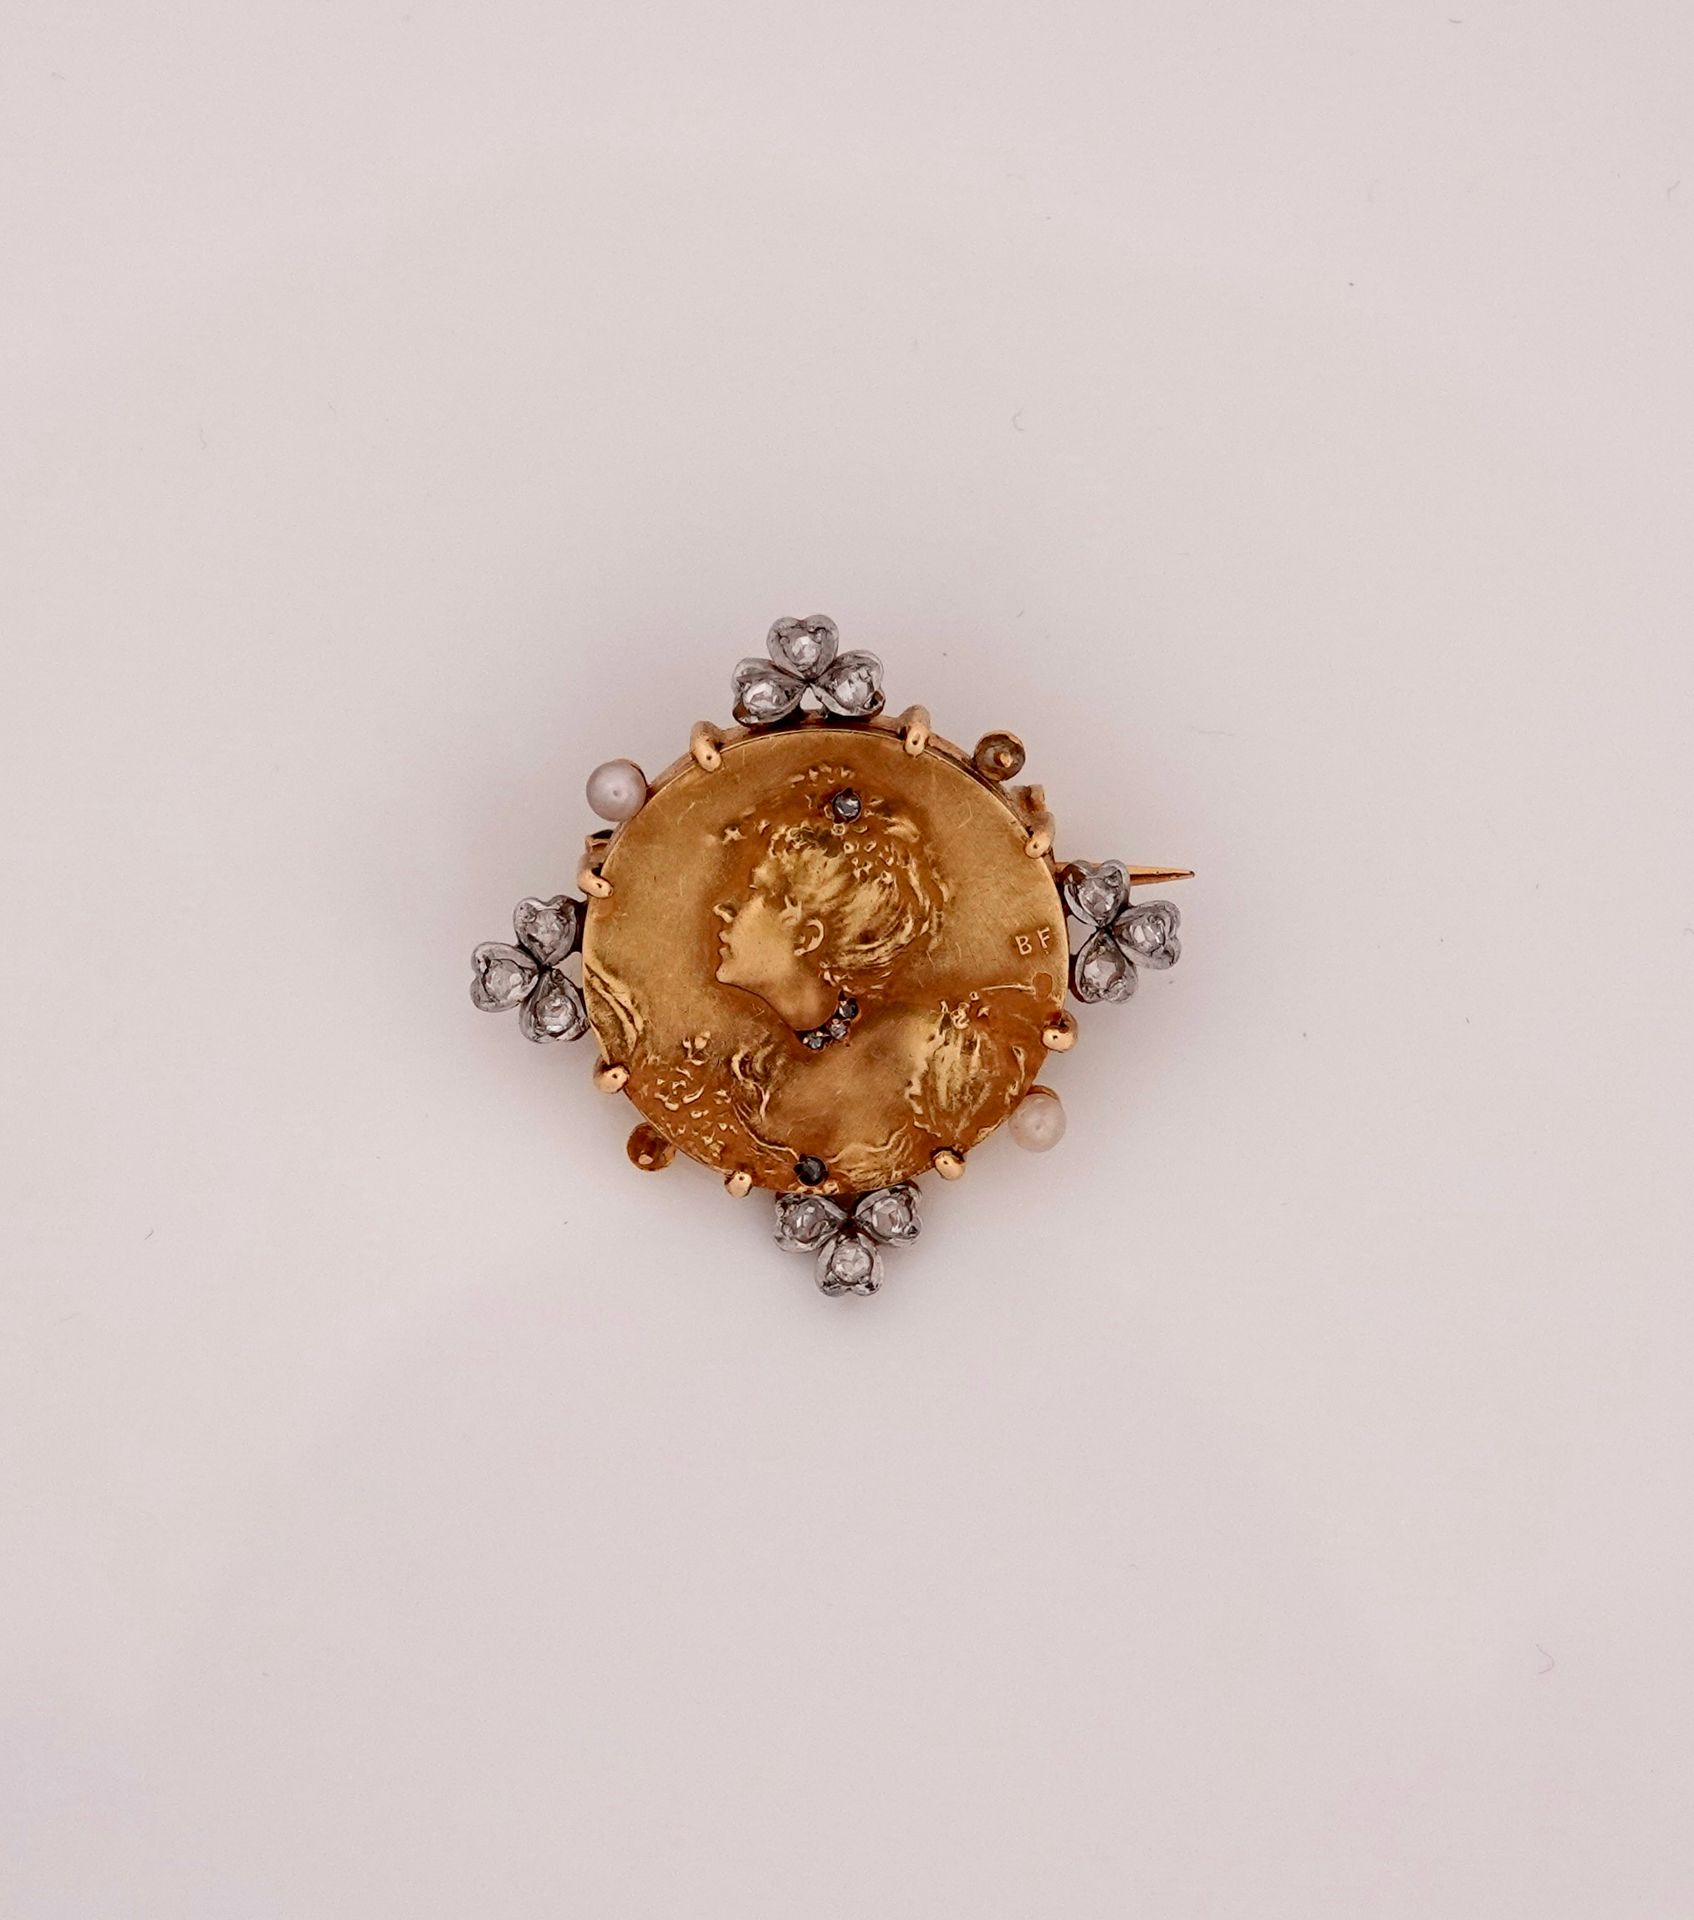 Null 新艺术运动。黄金圆形胸针，750毫米，画了一个女人的轮廓，半身装饰着珠宝，周围是玫瑰和珍珠种子，直径2厘米，有B.F.的字样，约1900年，重量：9.&hellip;